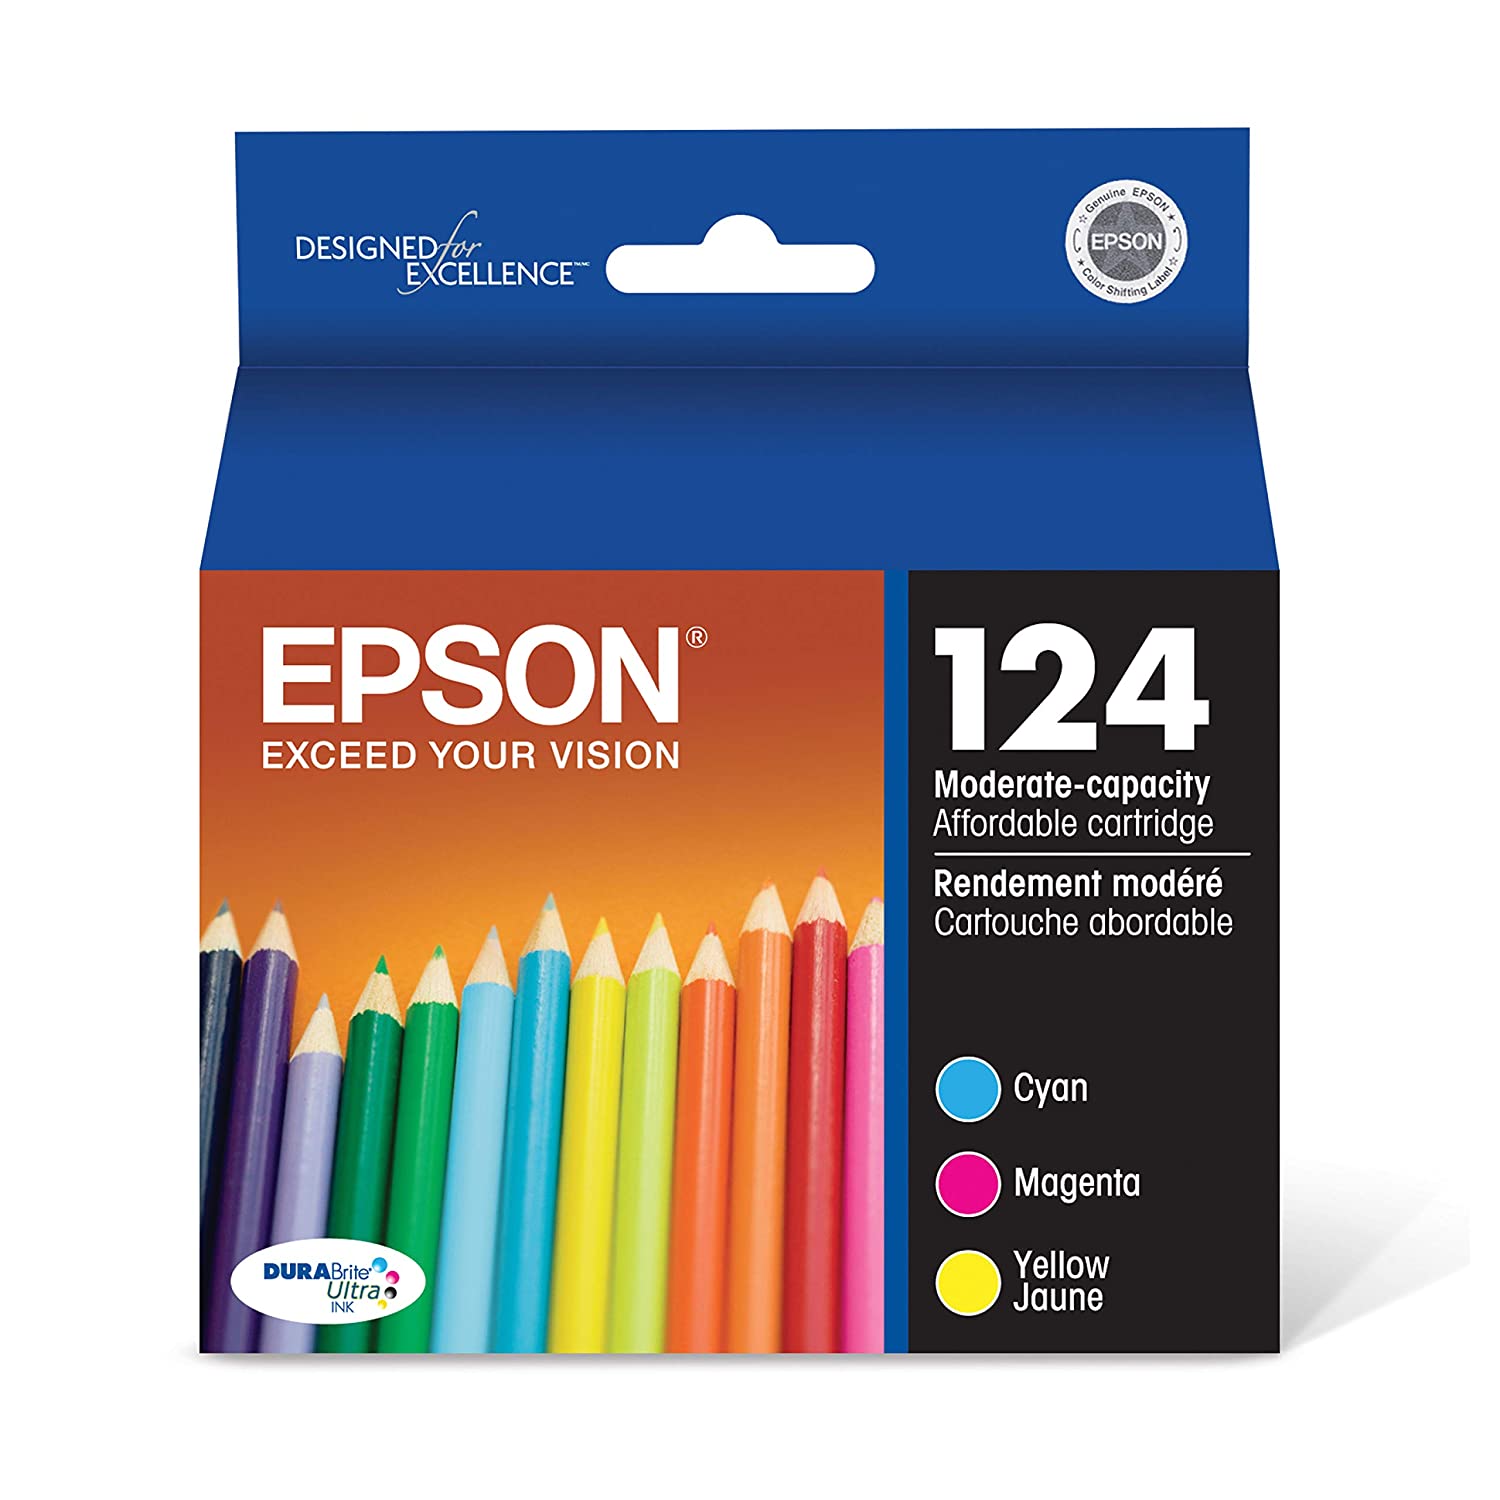 Absolute Toner Epson 124 Original Genuine OEM Combo Ink Cartridge | T124520S Original Epson Cartridge